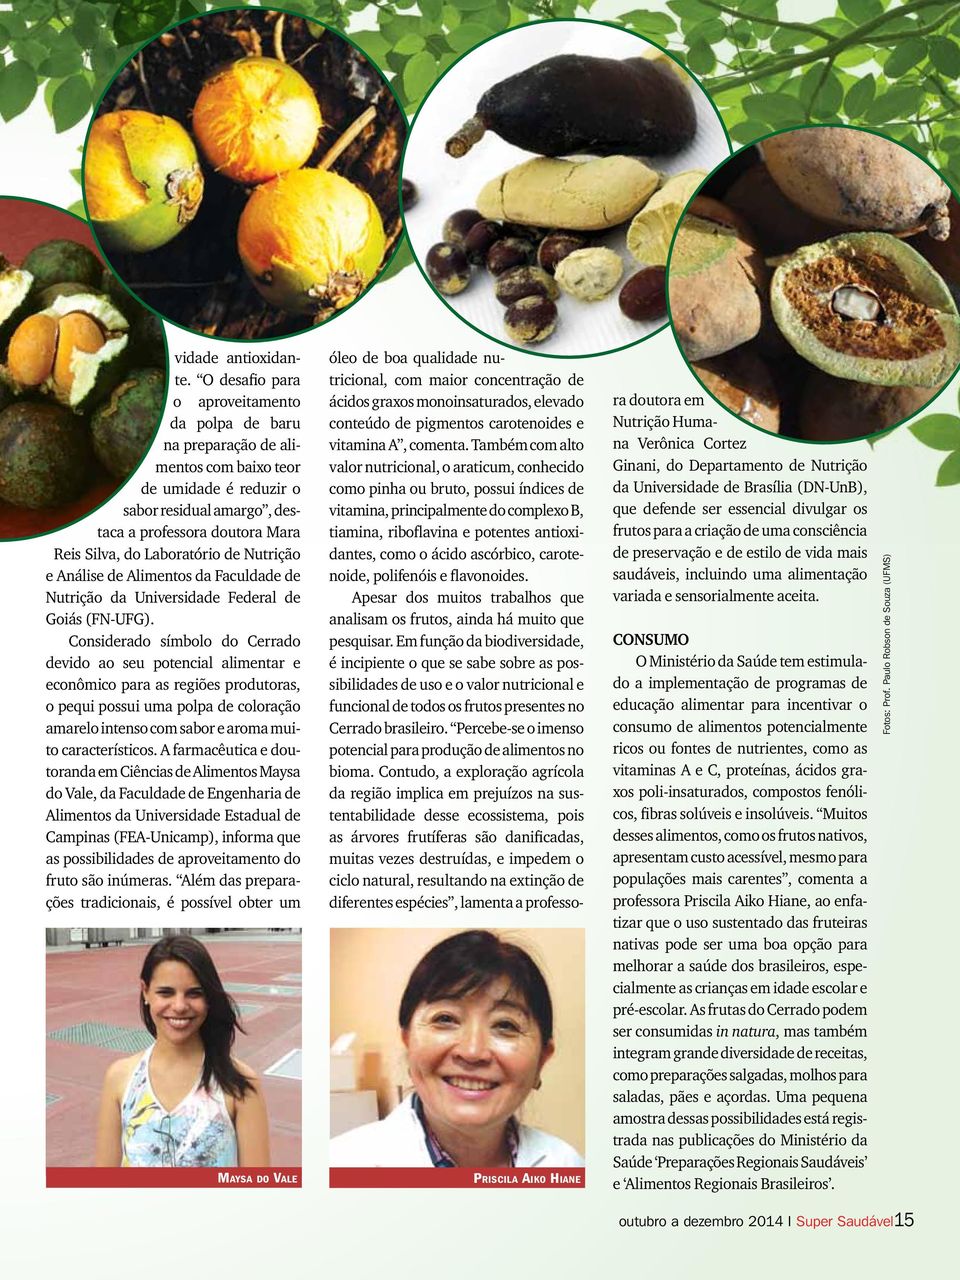 de Nutrição e Análise de Alimentos da Faculdade de Nutrição da Universidade Federal de Goiás (FN-UFG).